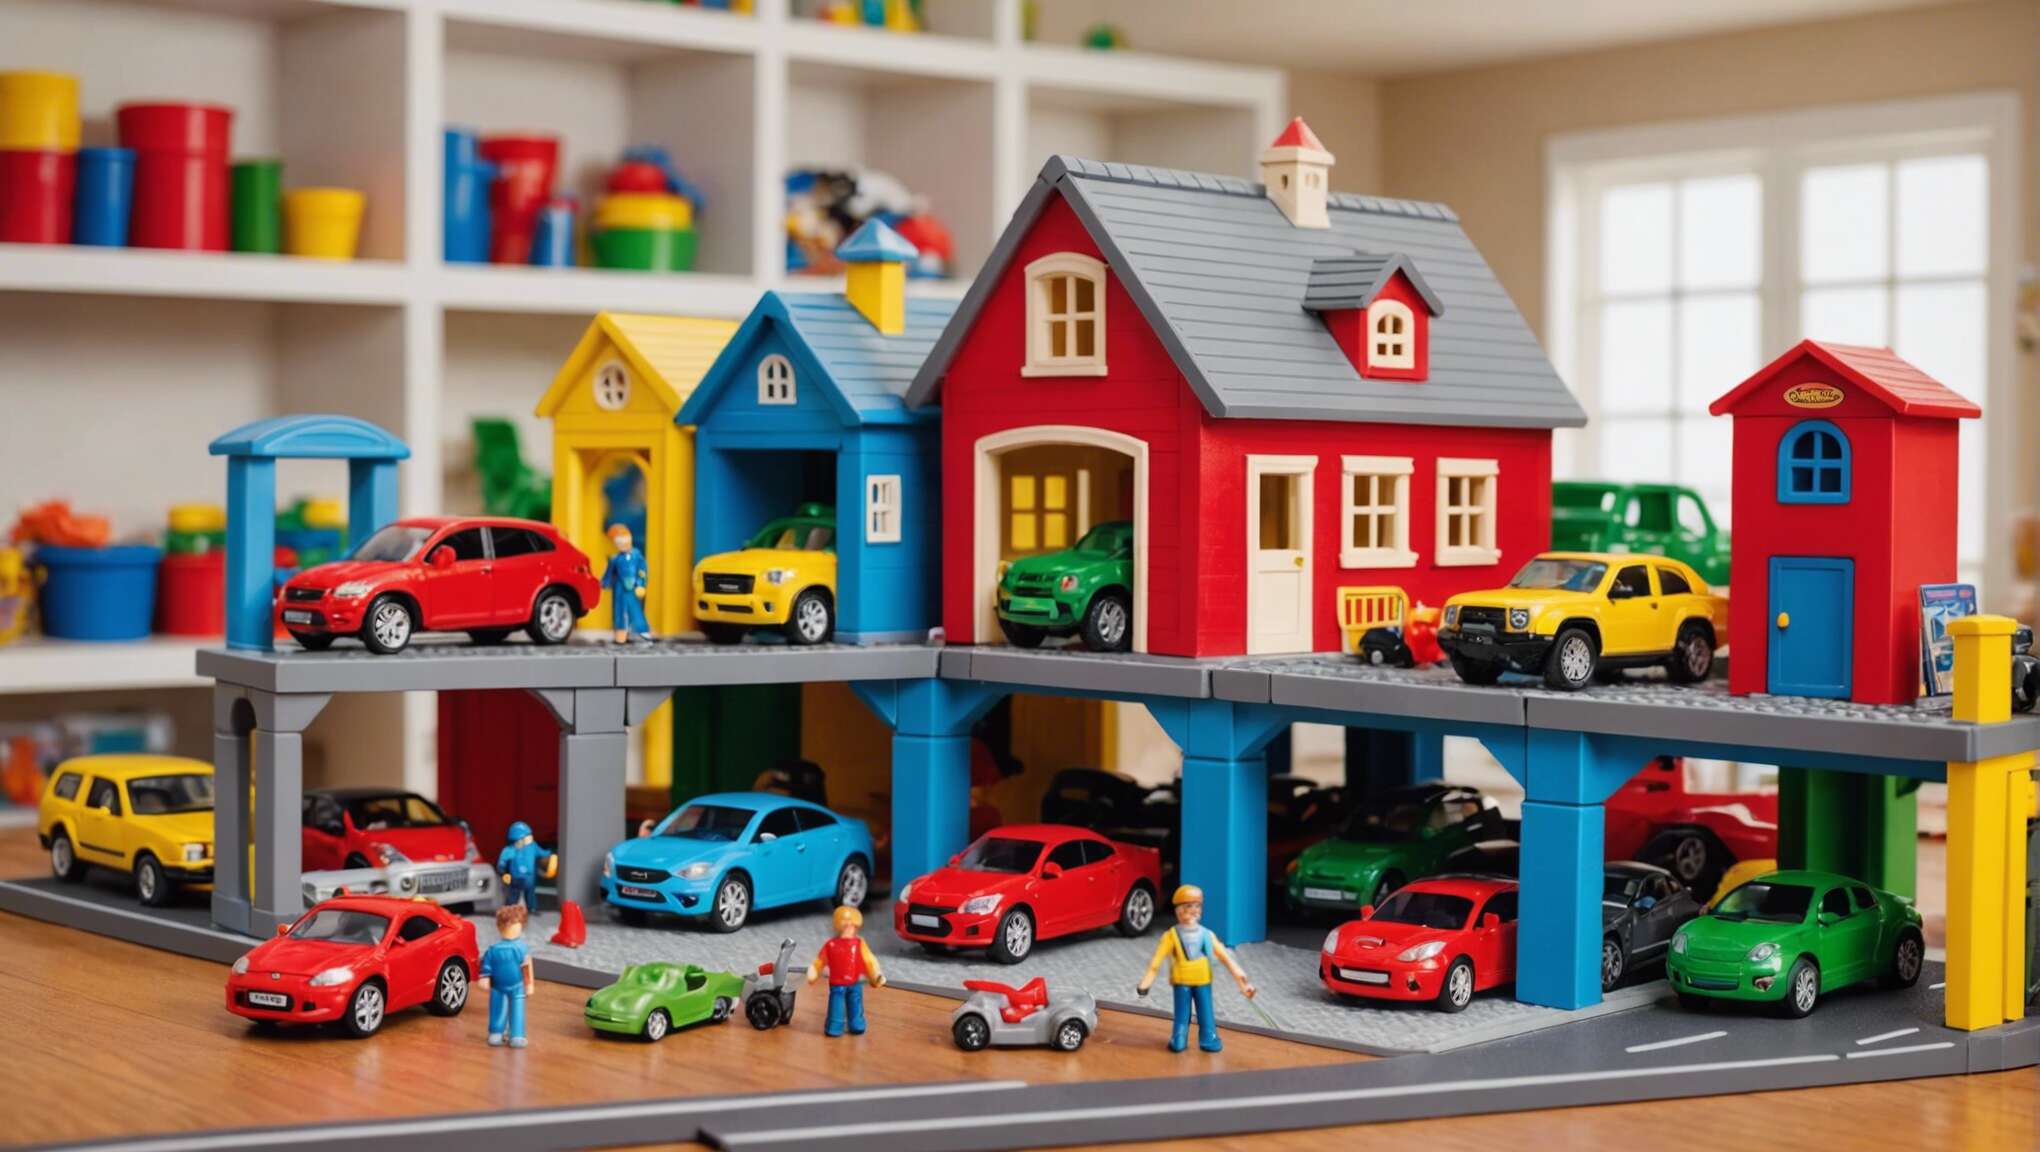 Comparatif garages pour enfants : critères de sélection et avis des parents